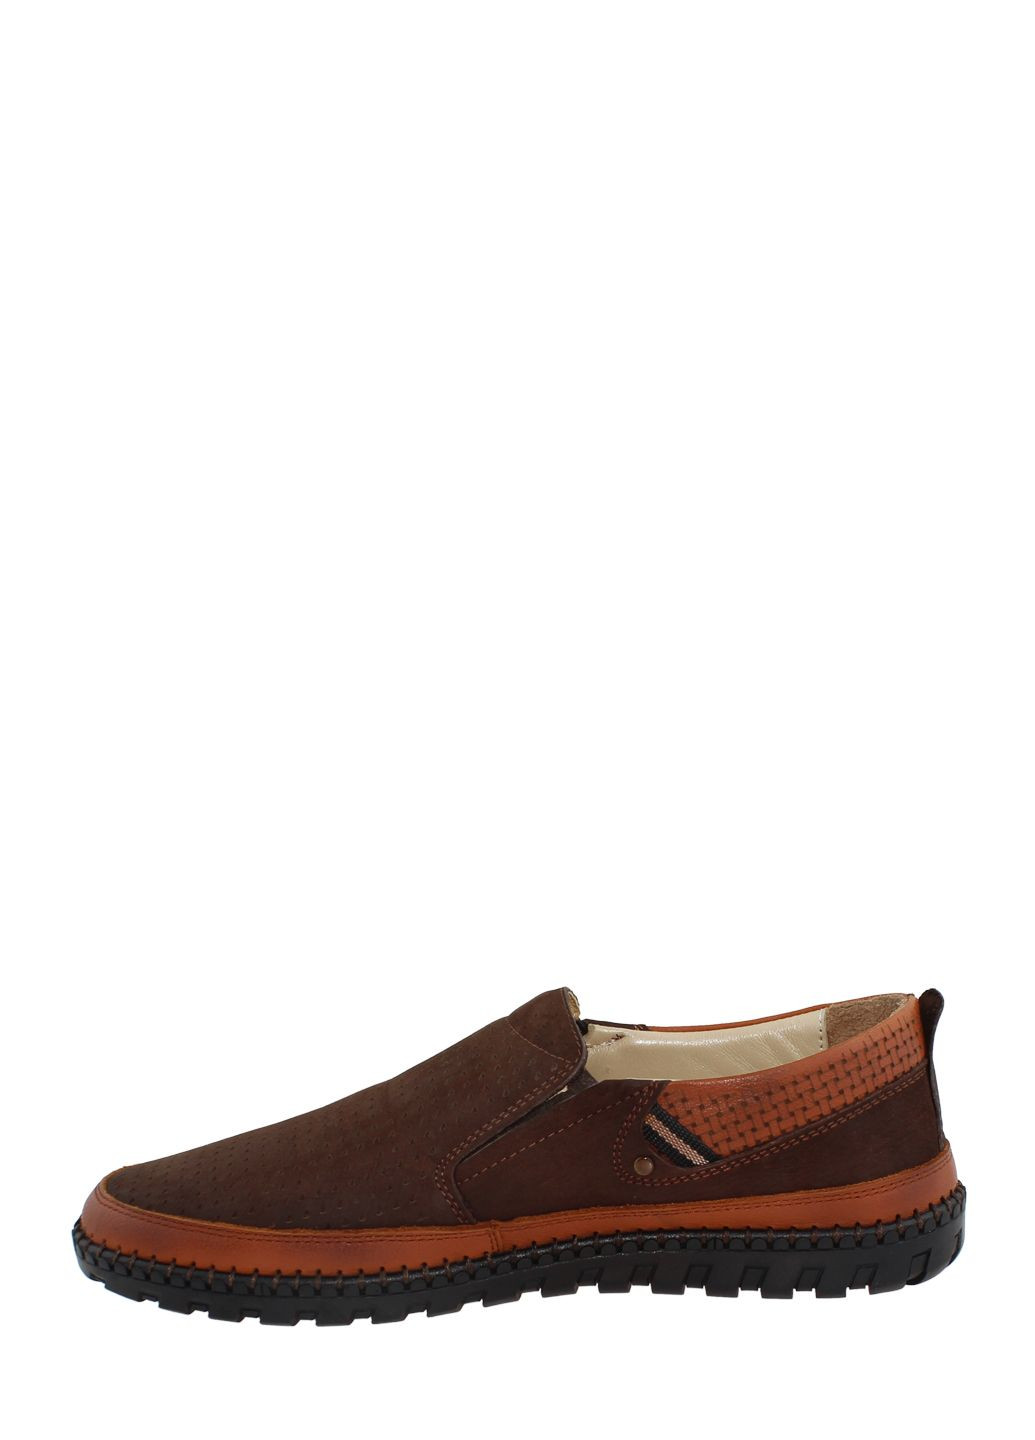 Коричневые туфли g2201.41 коричневый Goover